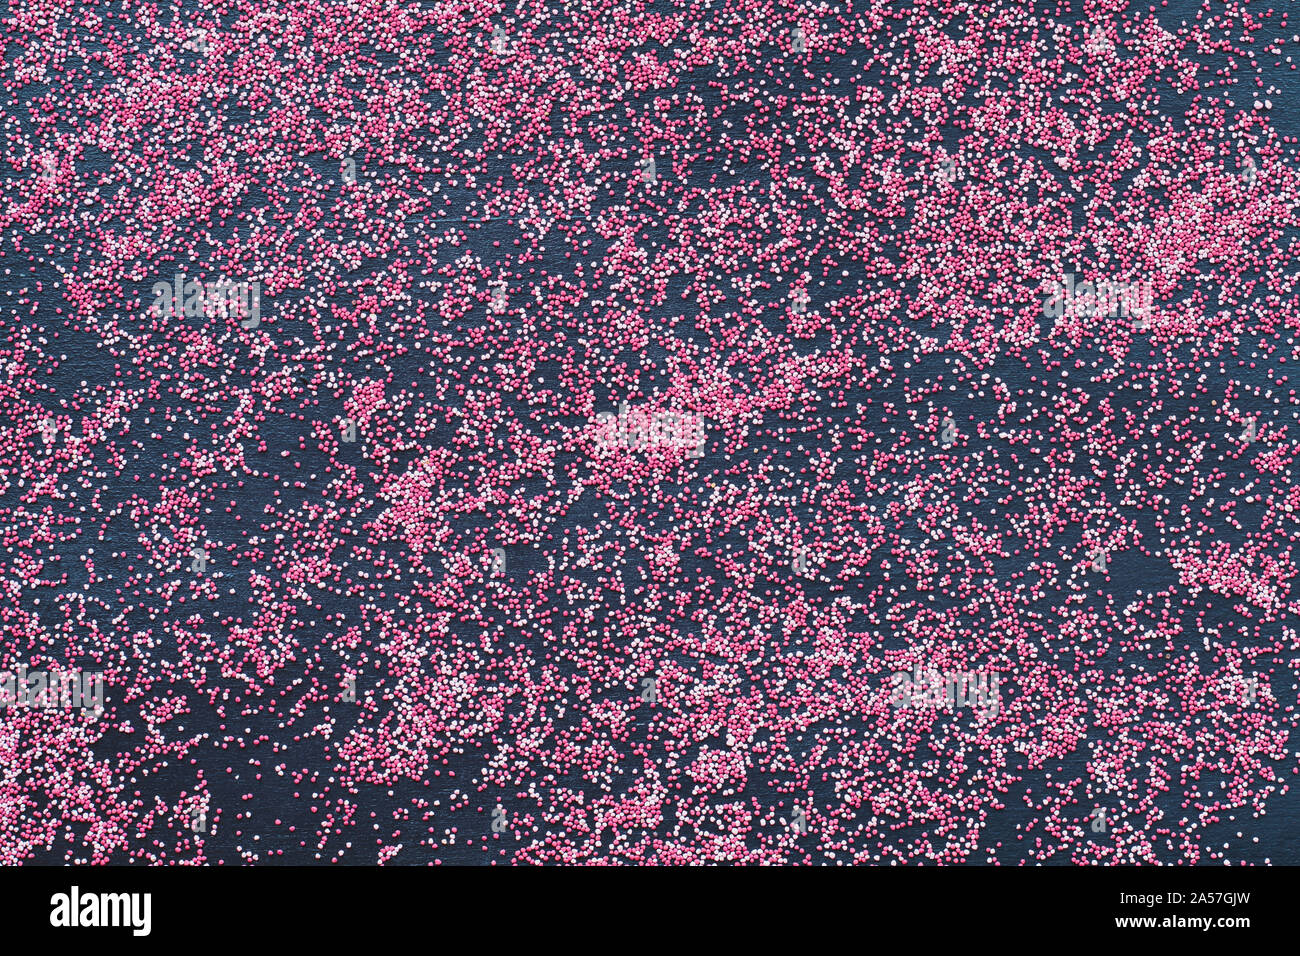 Résumé Vue d'en haut de la dispersion des graines de trèfle inoculé rose sur fond noir. Banque D'Images